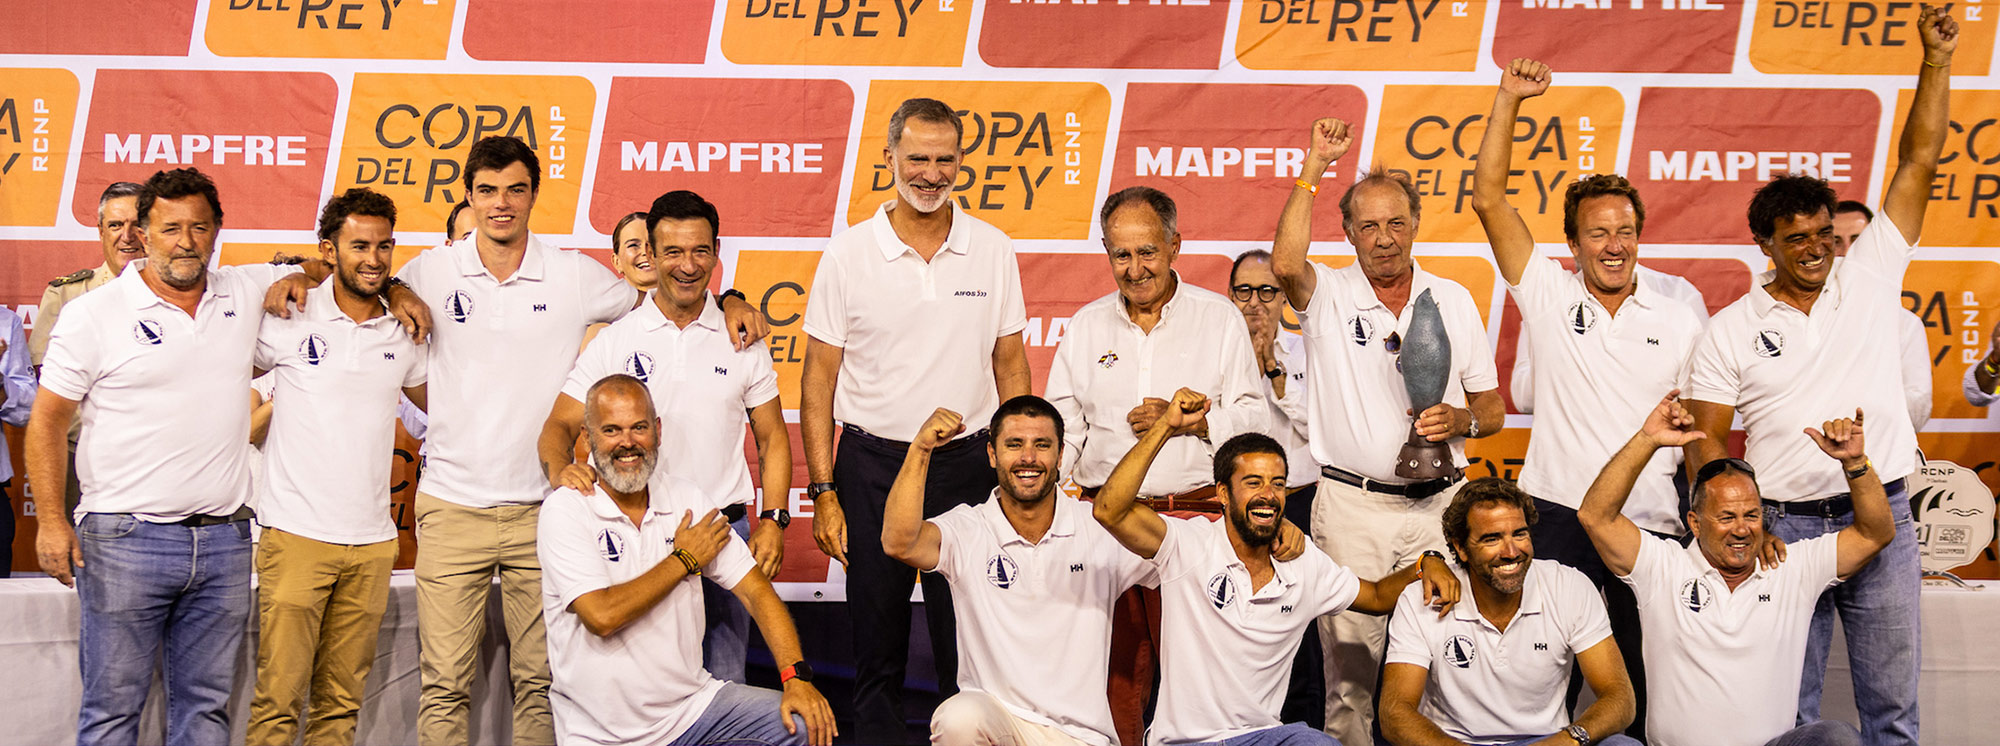 Barcos participantes Copa del Rey MAPFRE 2023 - orc1 - pbx sailing team - palibex